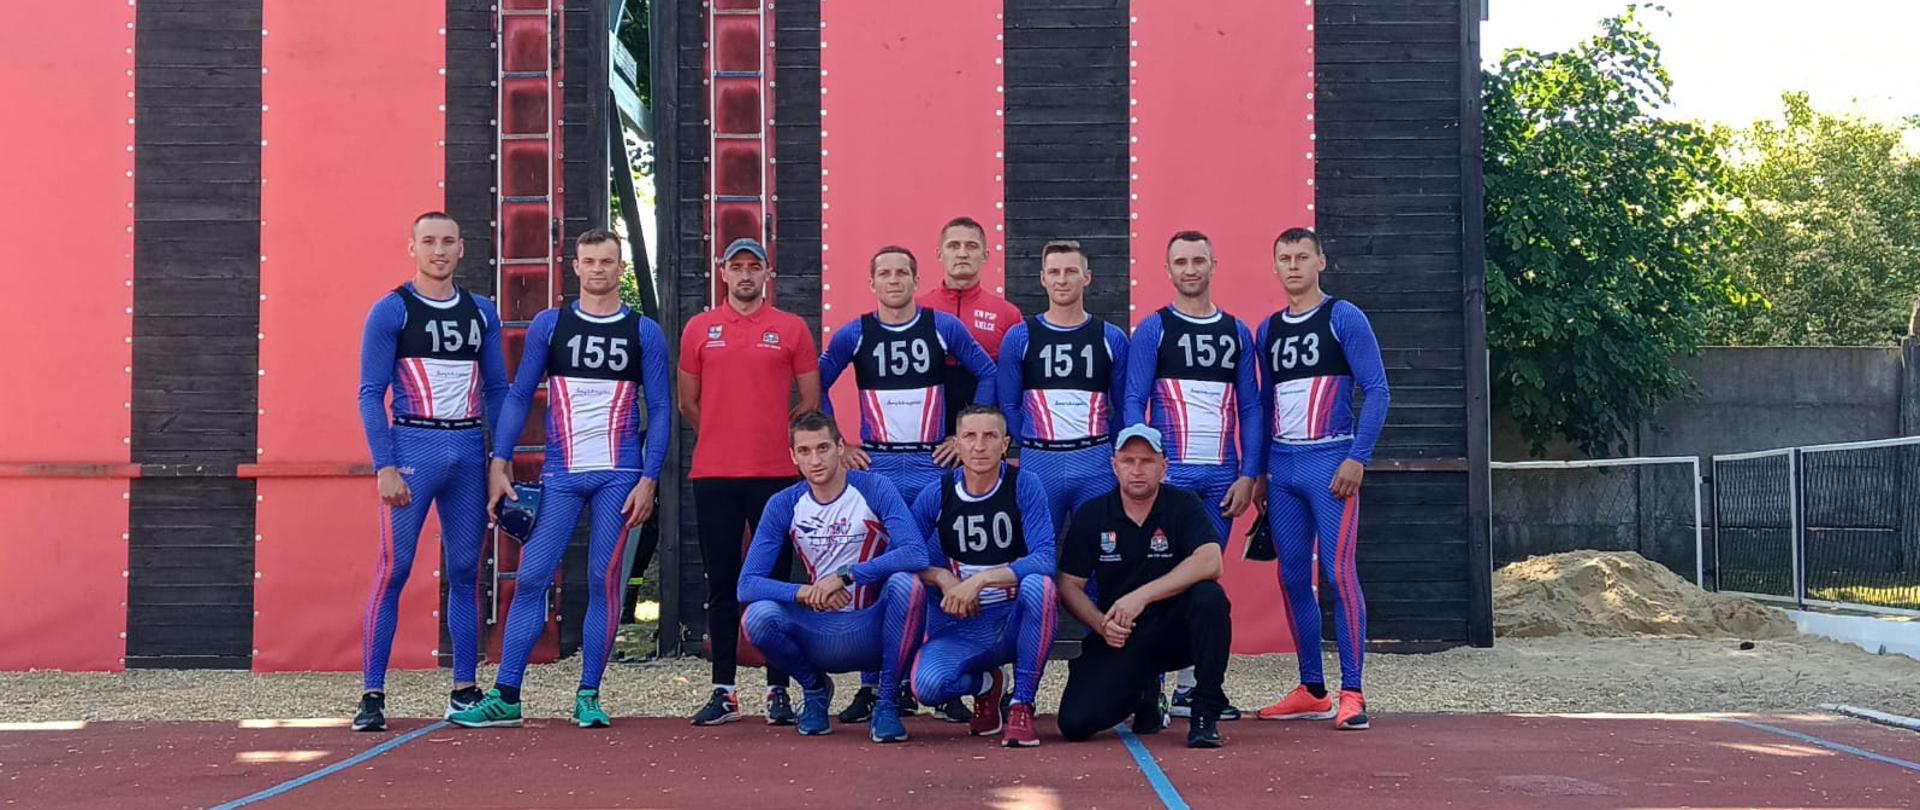 Na zdjęciu widzimy mężczyzn wchodzących w skład reprezentacji województwa świętokrzyskiego. Ubrani są w koszulki sportowe niebieskie.